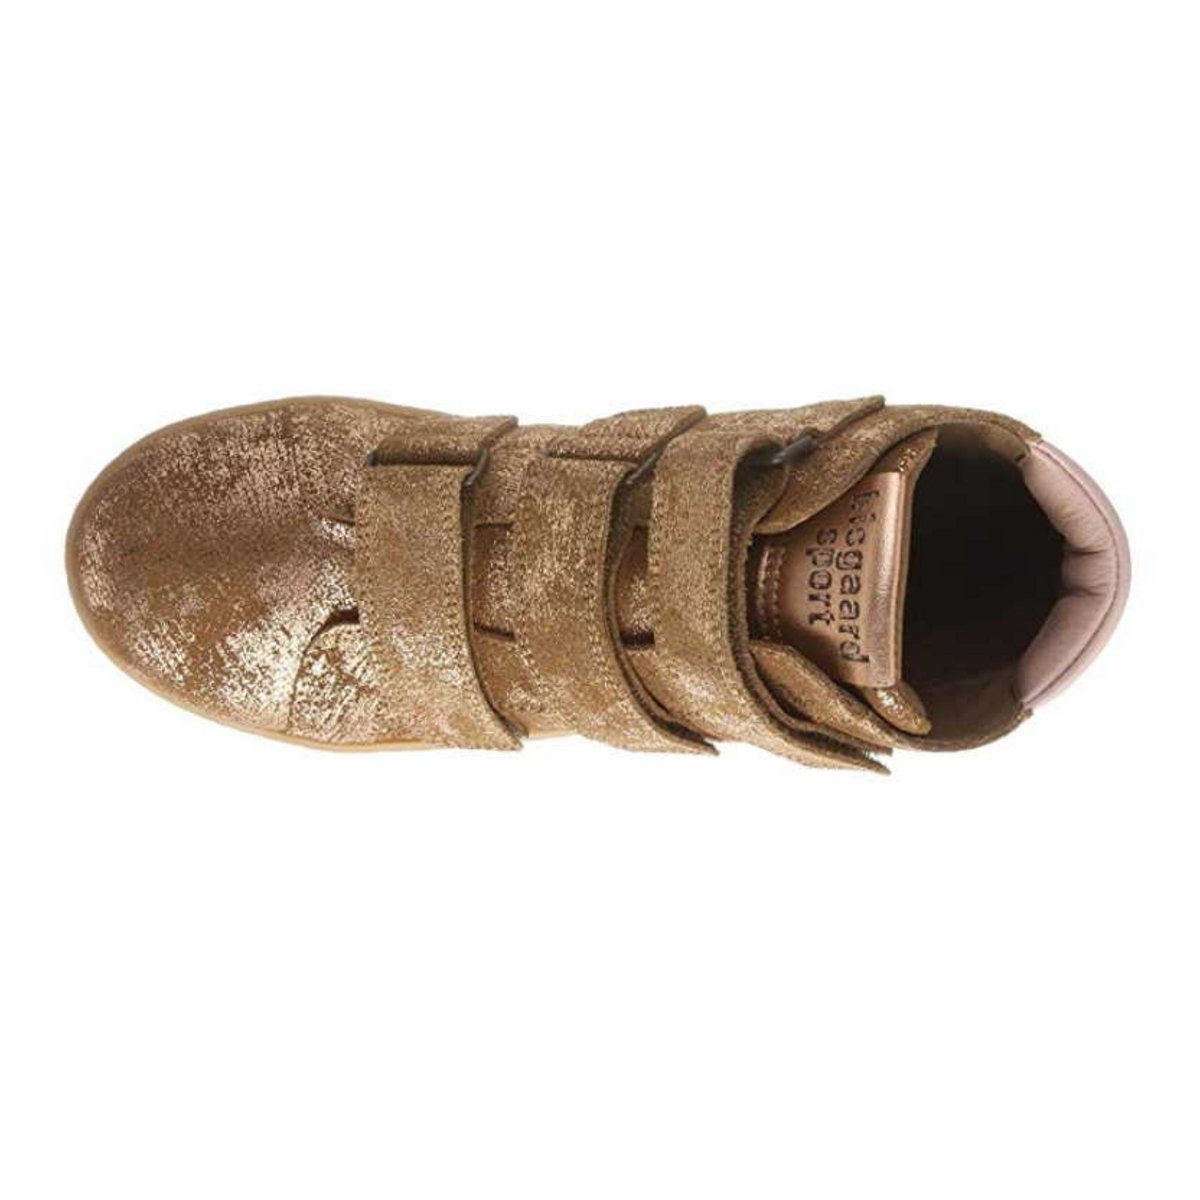 (1-tlg) Sneaker Bisgaard bronze